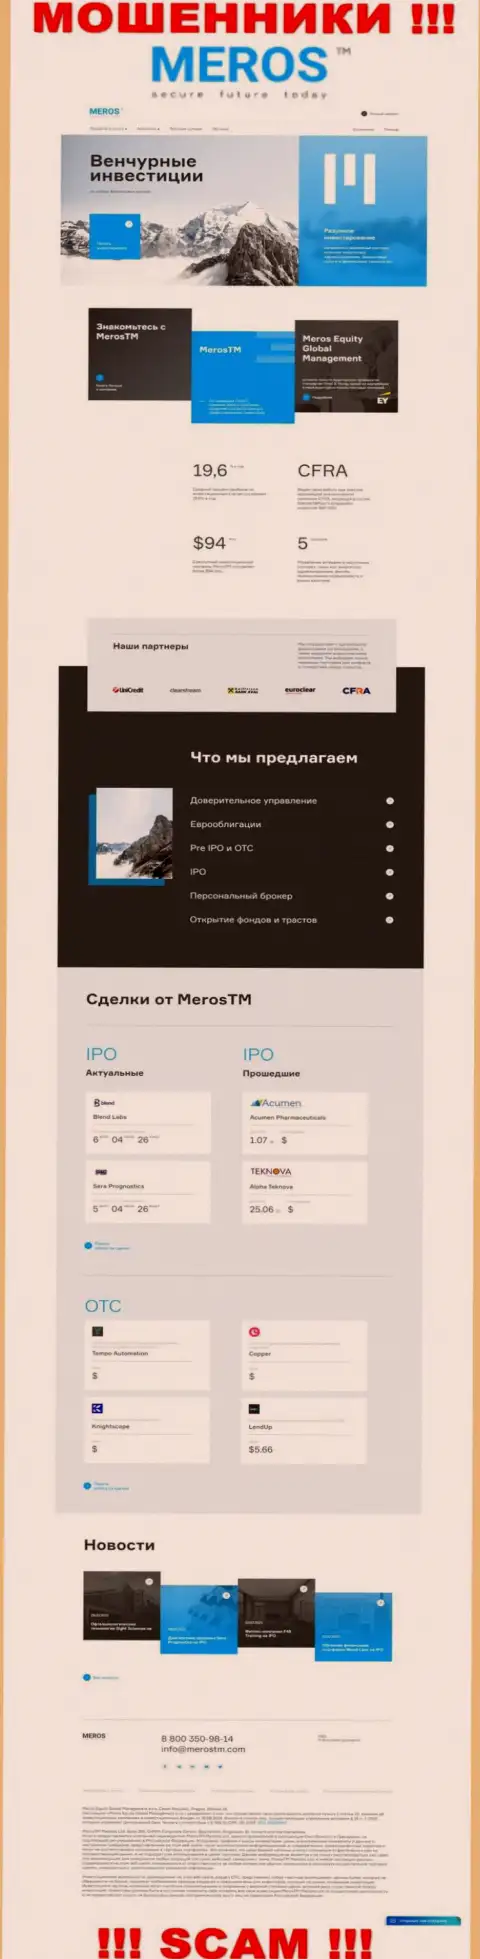 Разбор официального веб-портала мошенников MerosTM